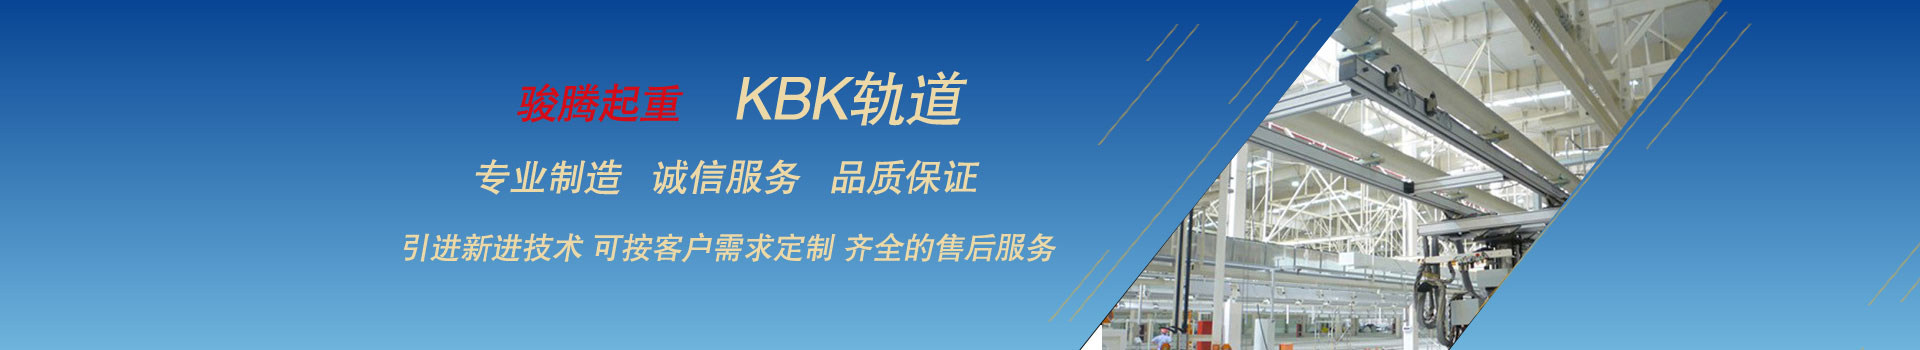 KBK轨道日常排除故障操作